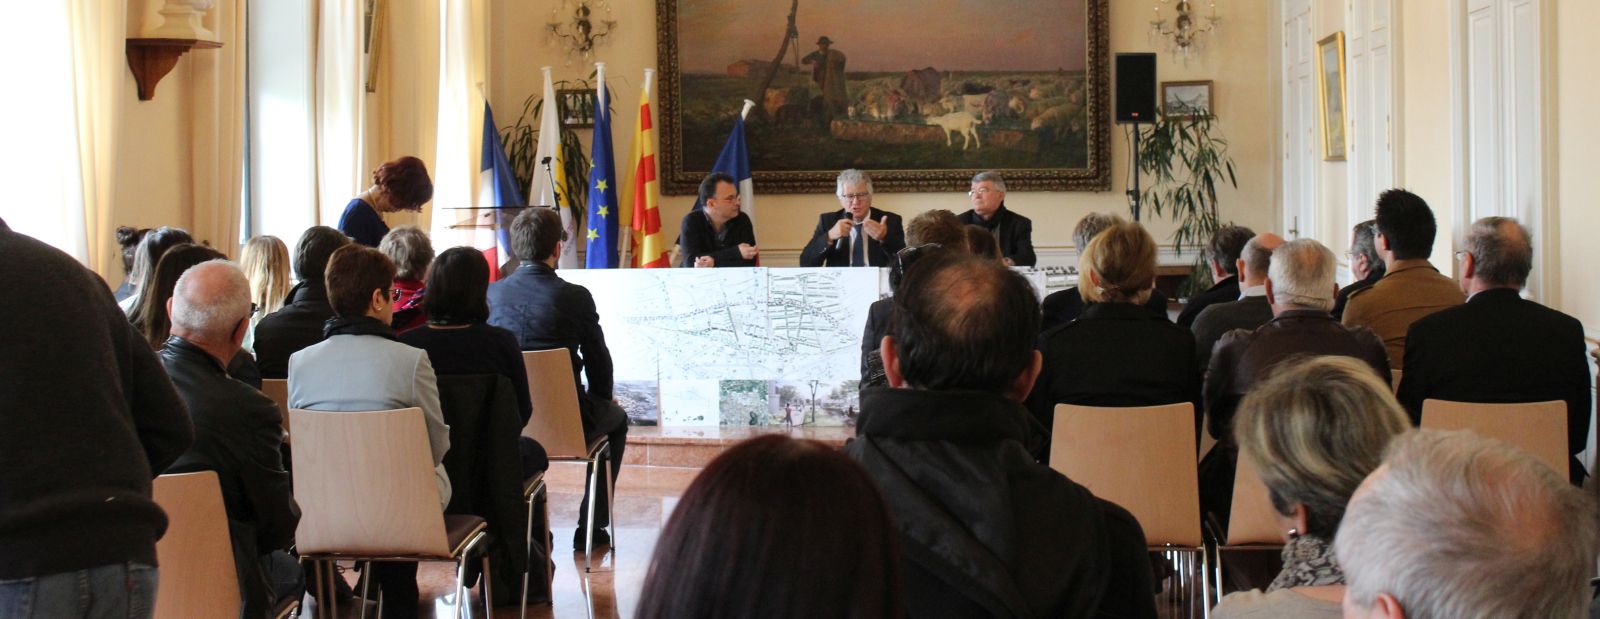 Notification de l’accord-cadre relatif à la maîtrise d’œuvre urbaine pour le quartier gare de Châteaurenard